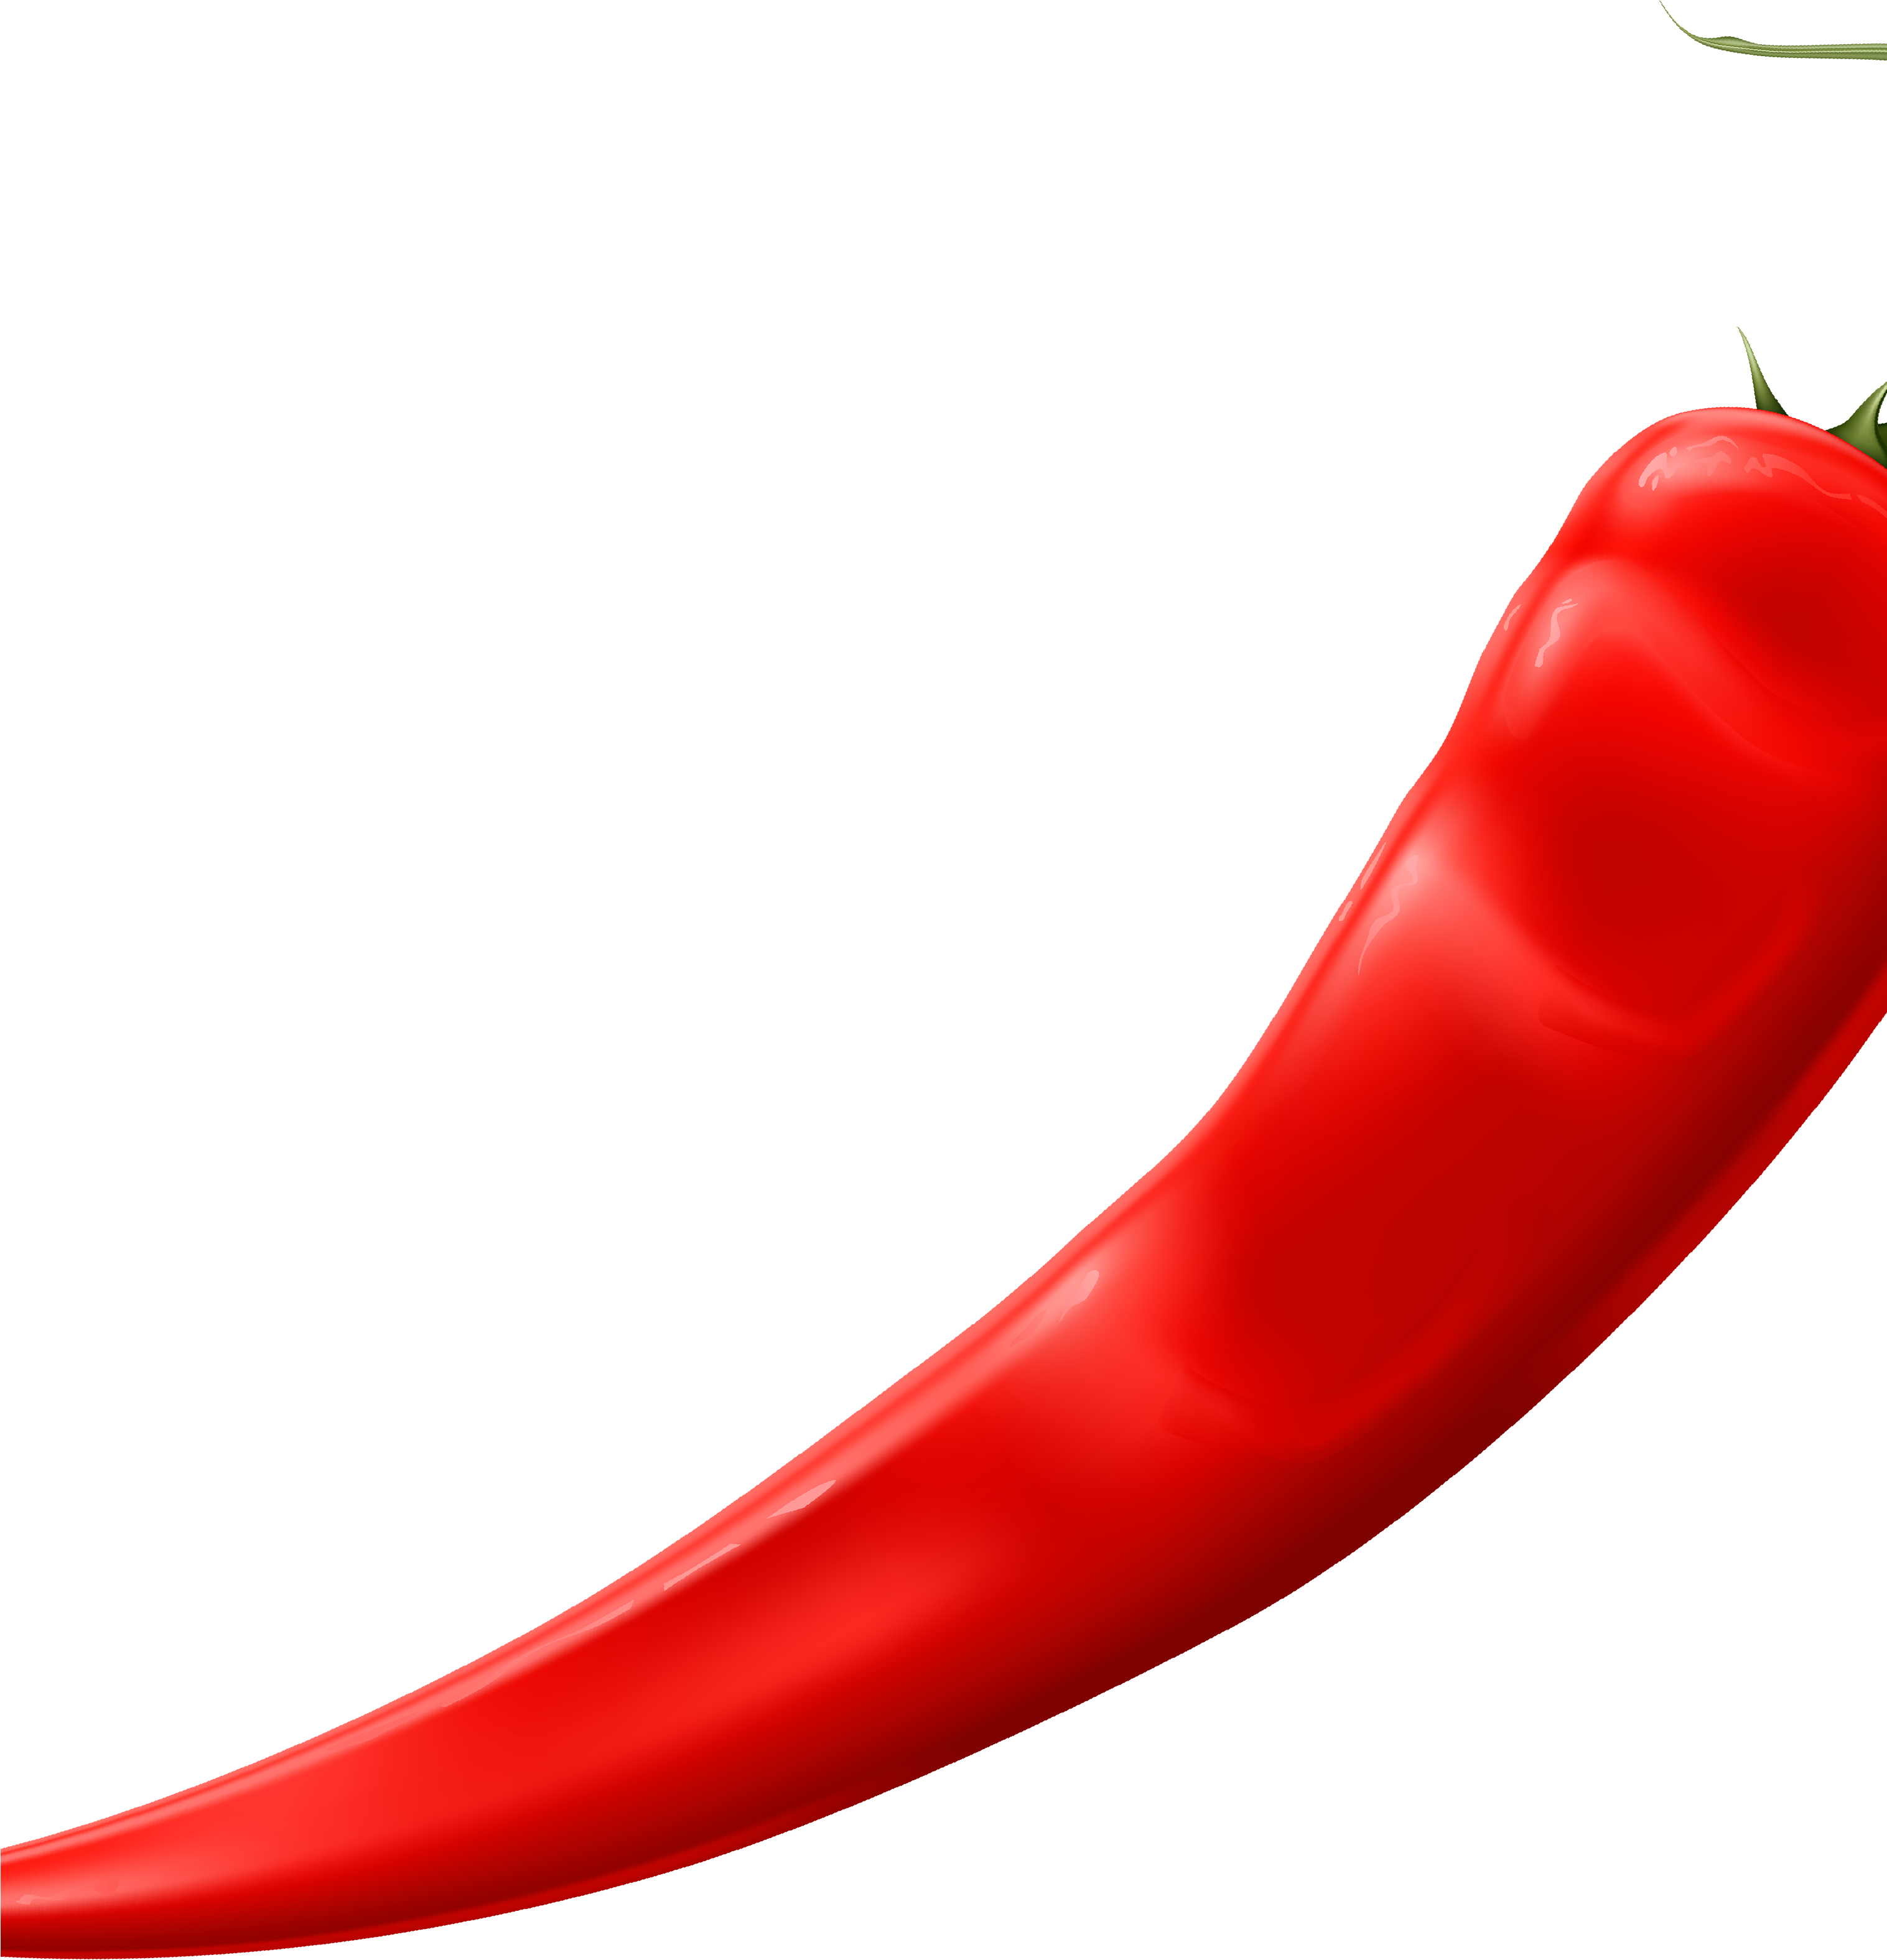 Cayenne Pepper Serrano Pepper Bell Pepper Chili Pepper - Cayenne Pepper Serrano Pepper Bell Pepper Chili Pepper (3032x3195)